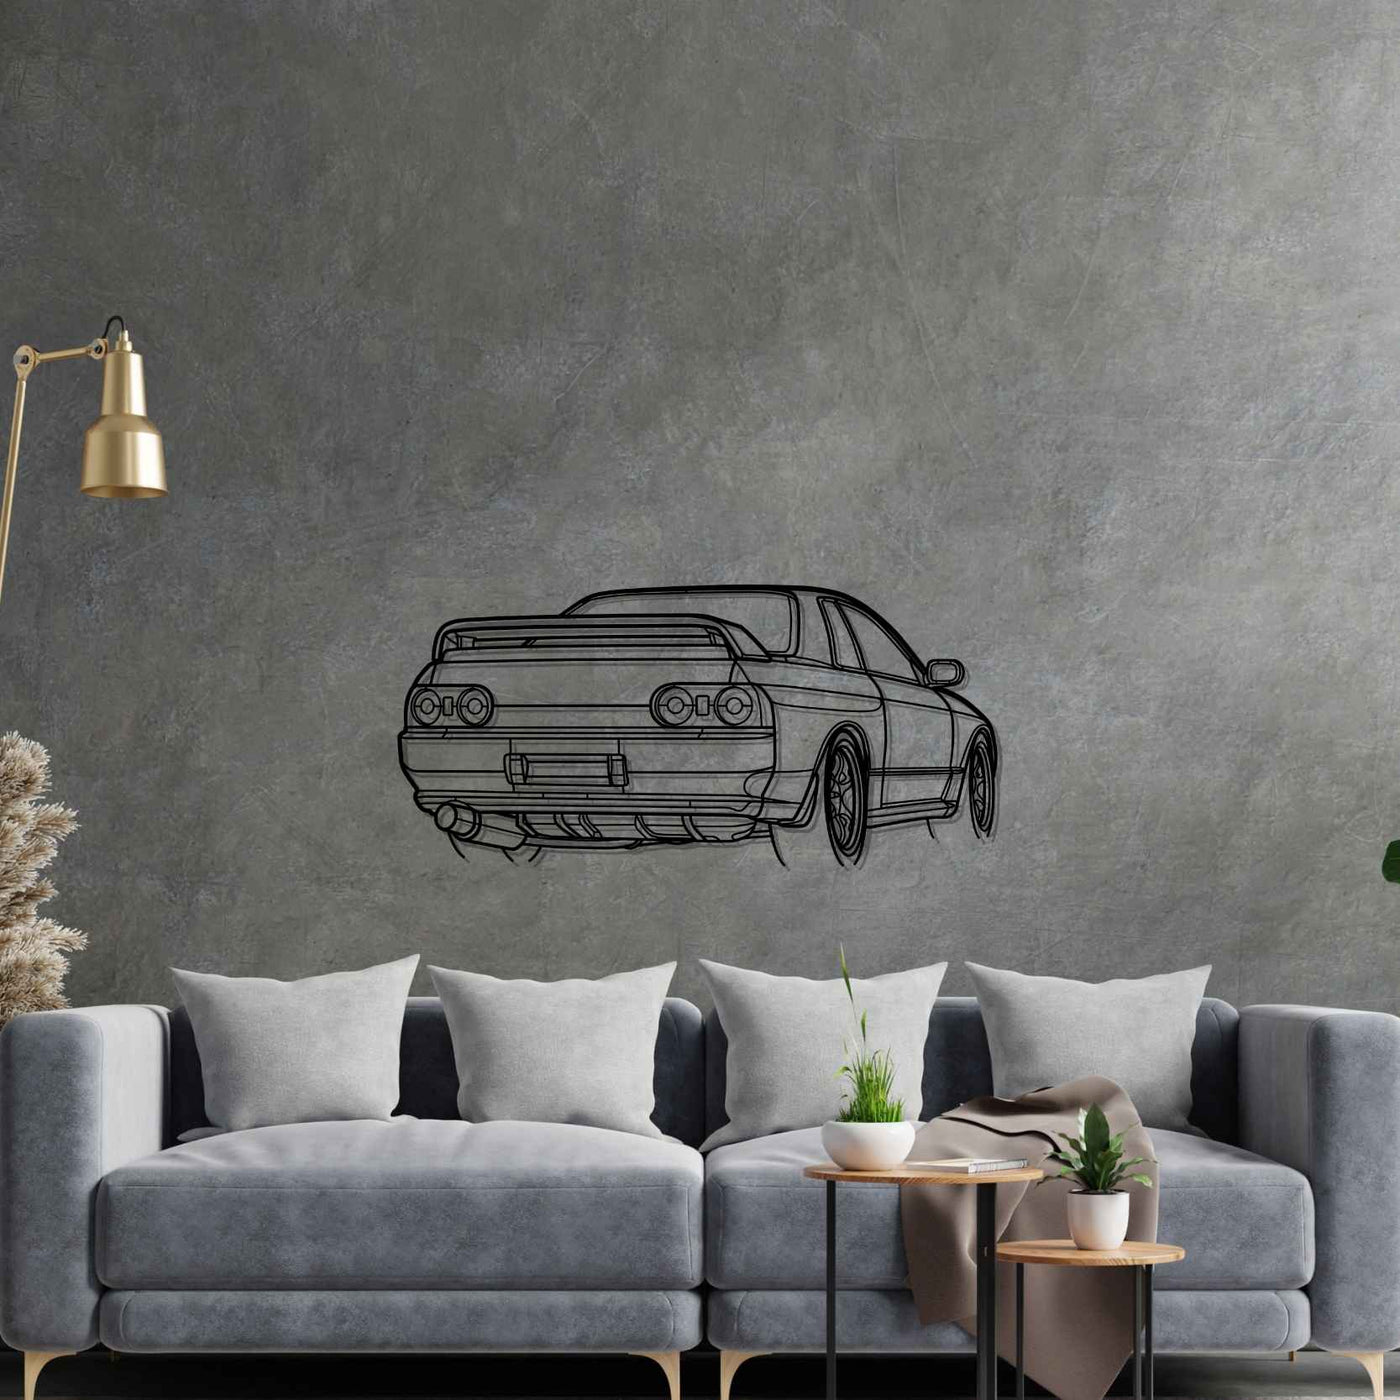 R32 GTR Nismo Angle Silhouette Metal Wall Art